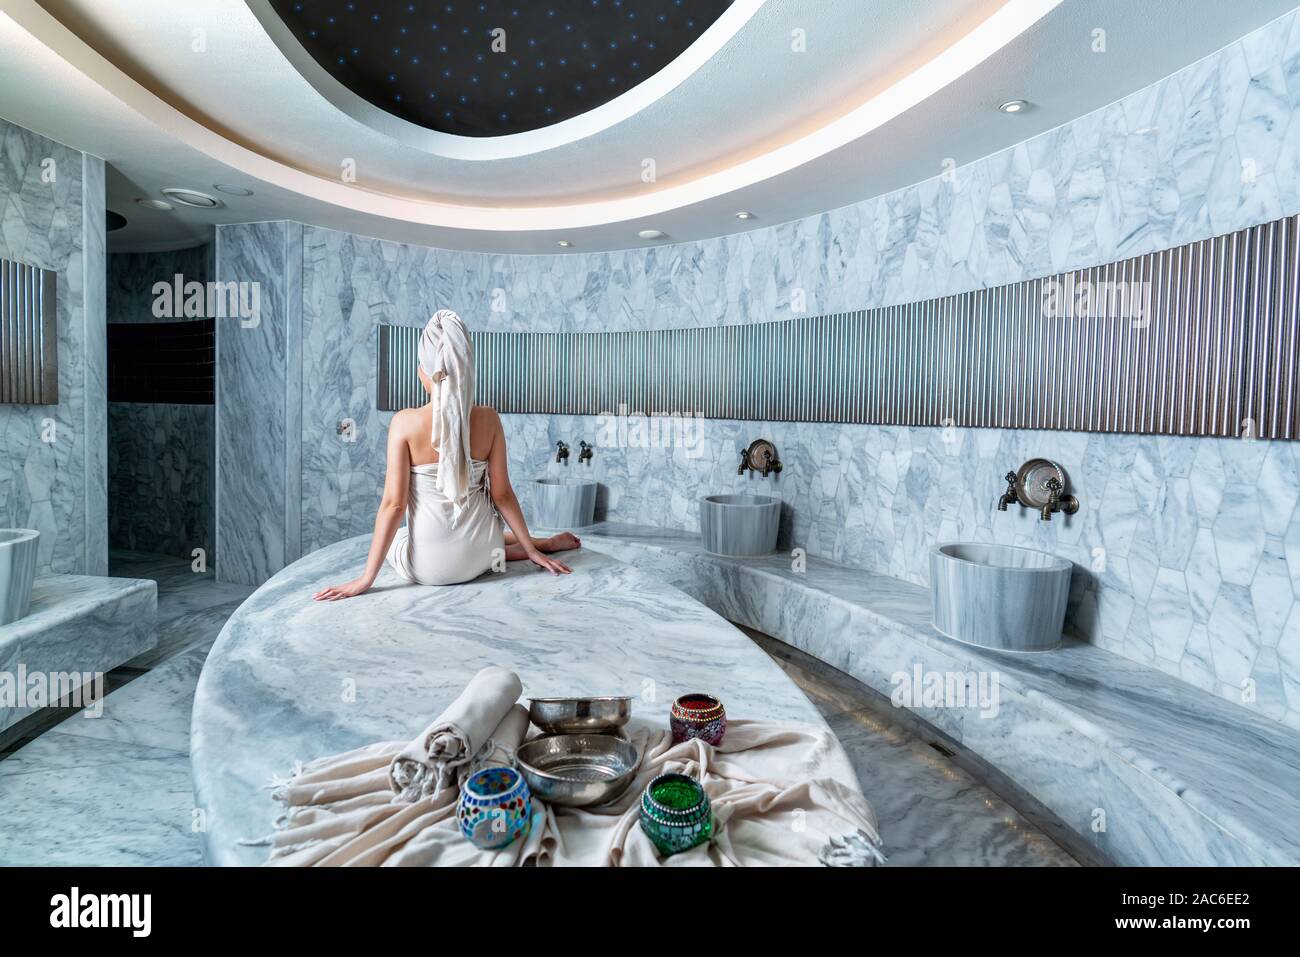 Frau warten in der authentischen Atmosphäre im türkischen Bad zu baden. Stockfoto